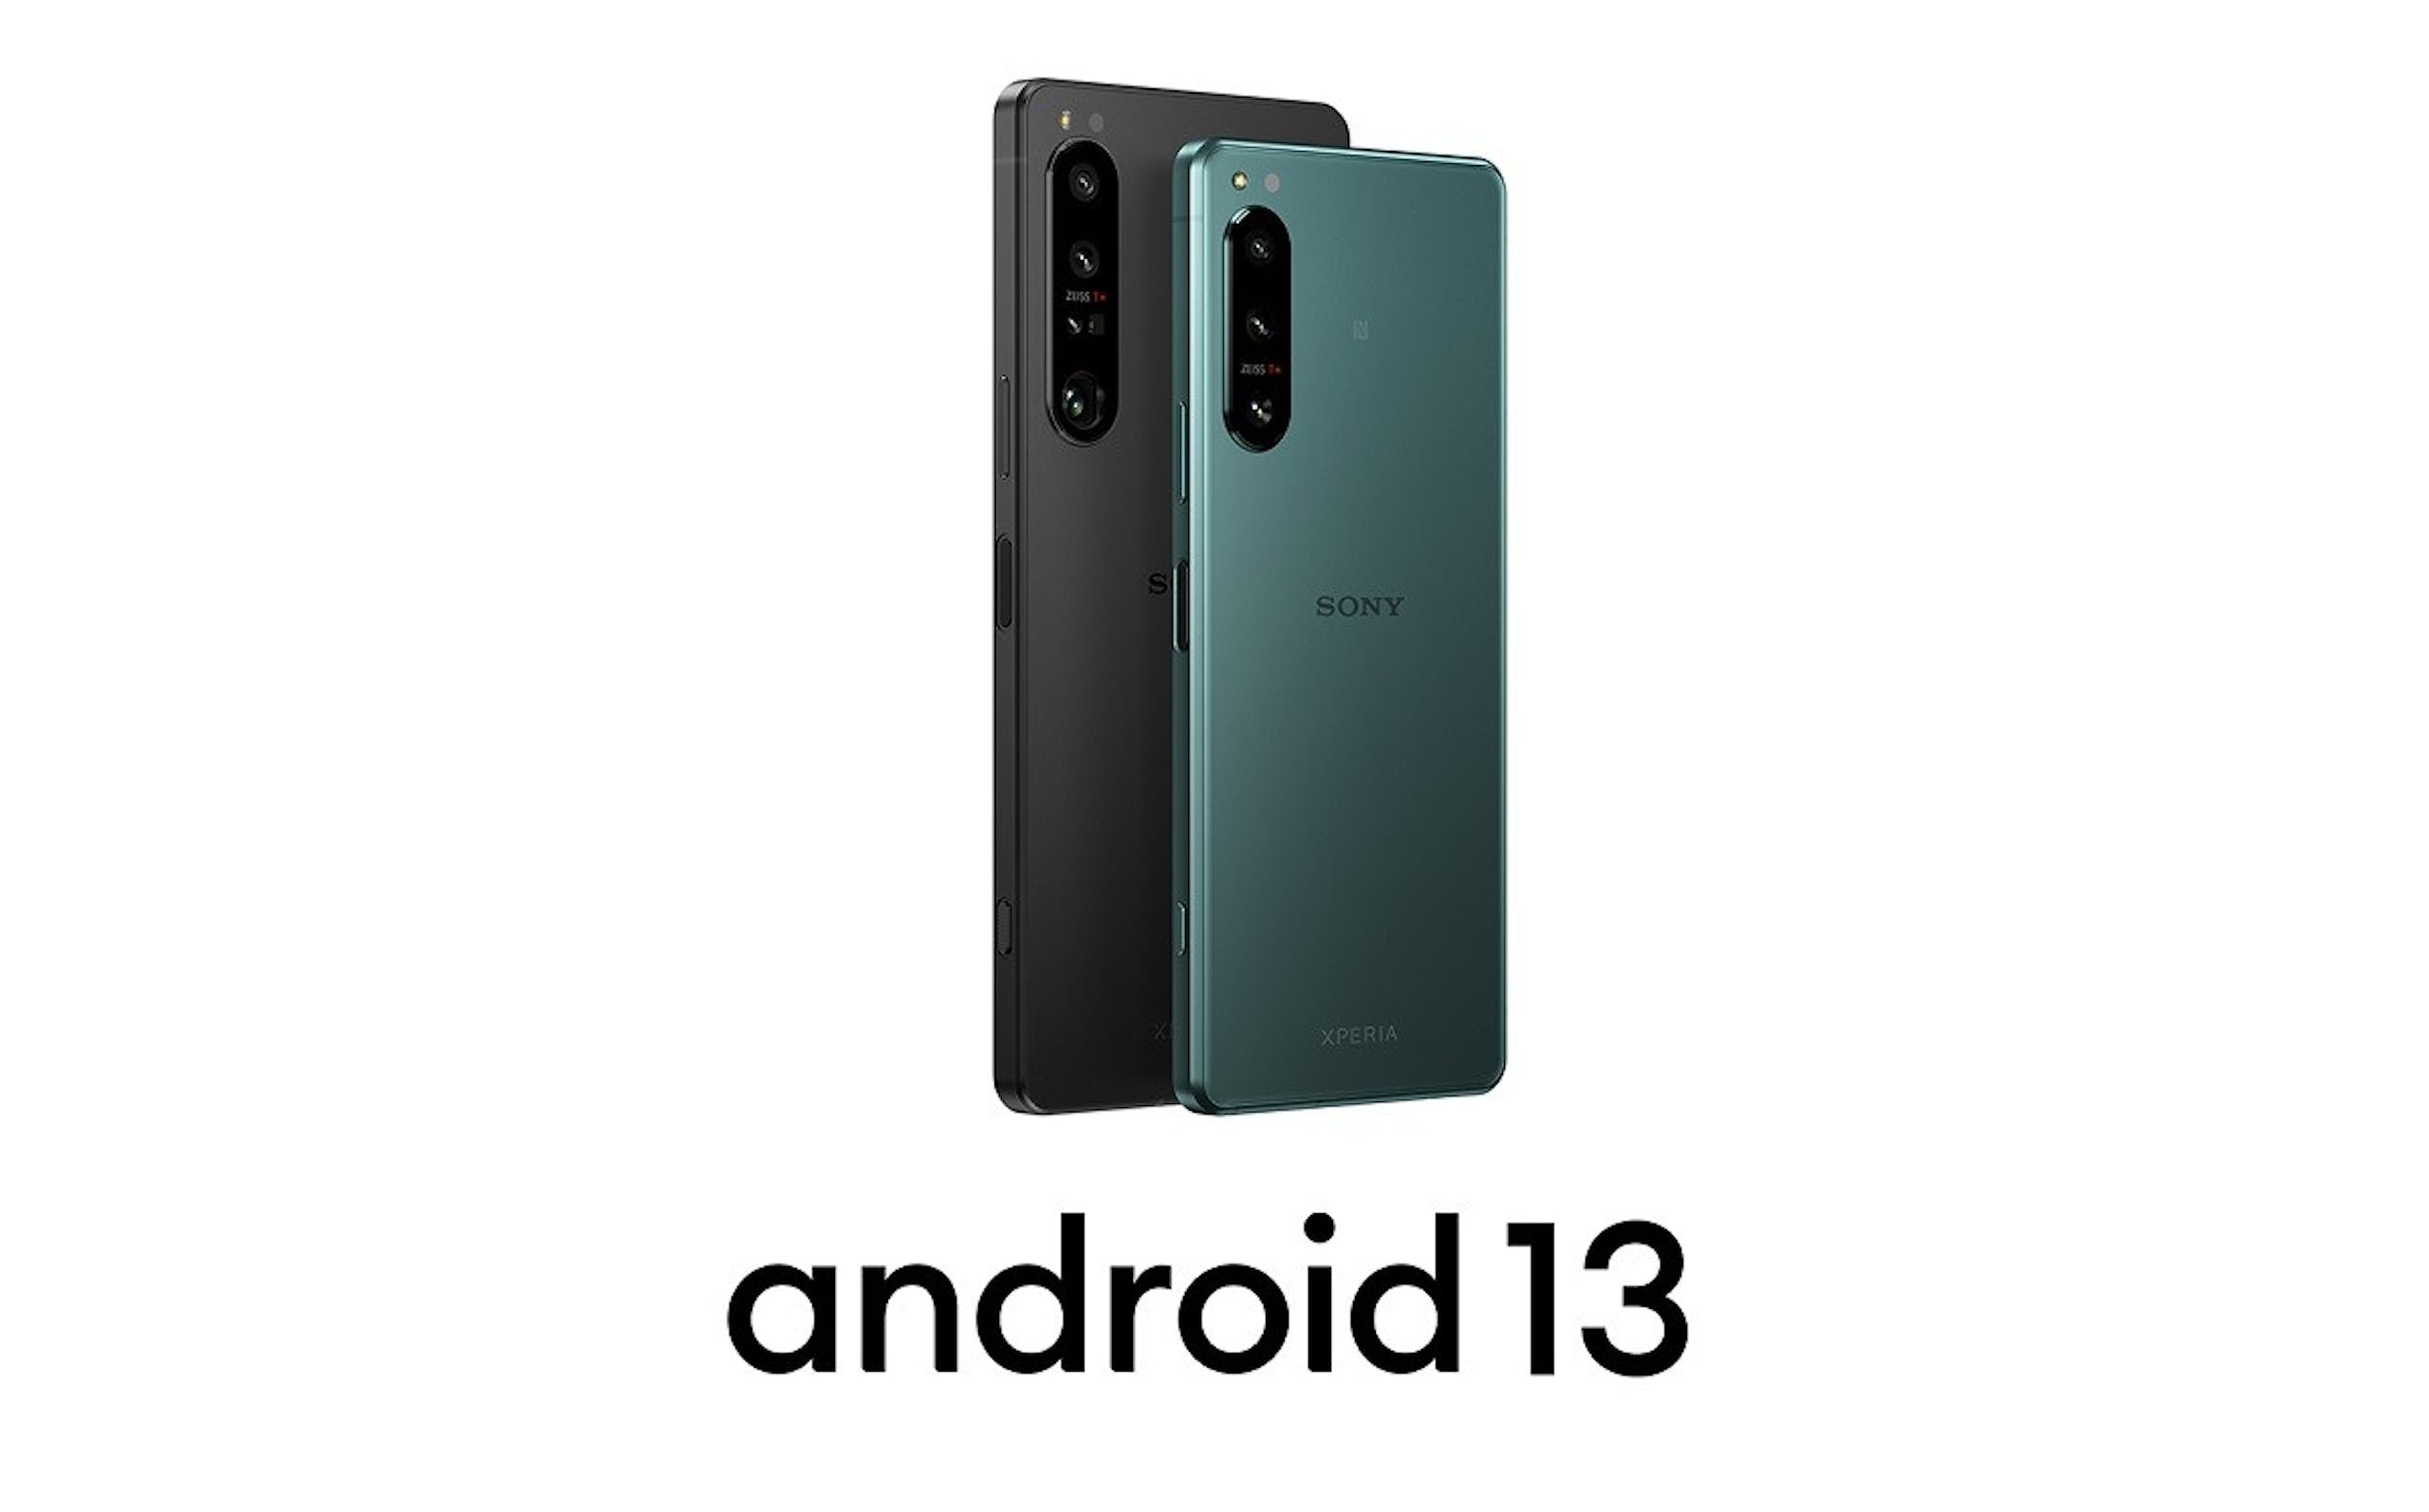 照片中提到了1、SONY、android 13，包含了功能手機、電子配件、功能手機、手機、移動電話